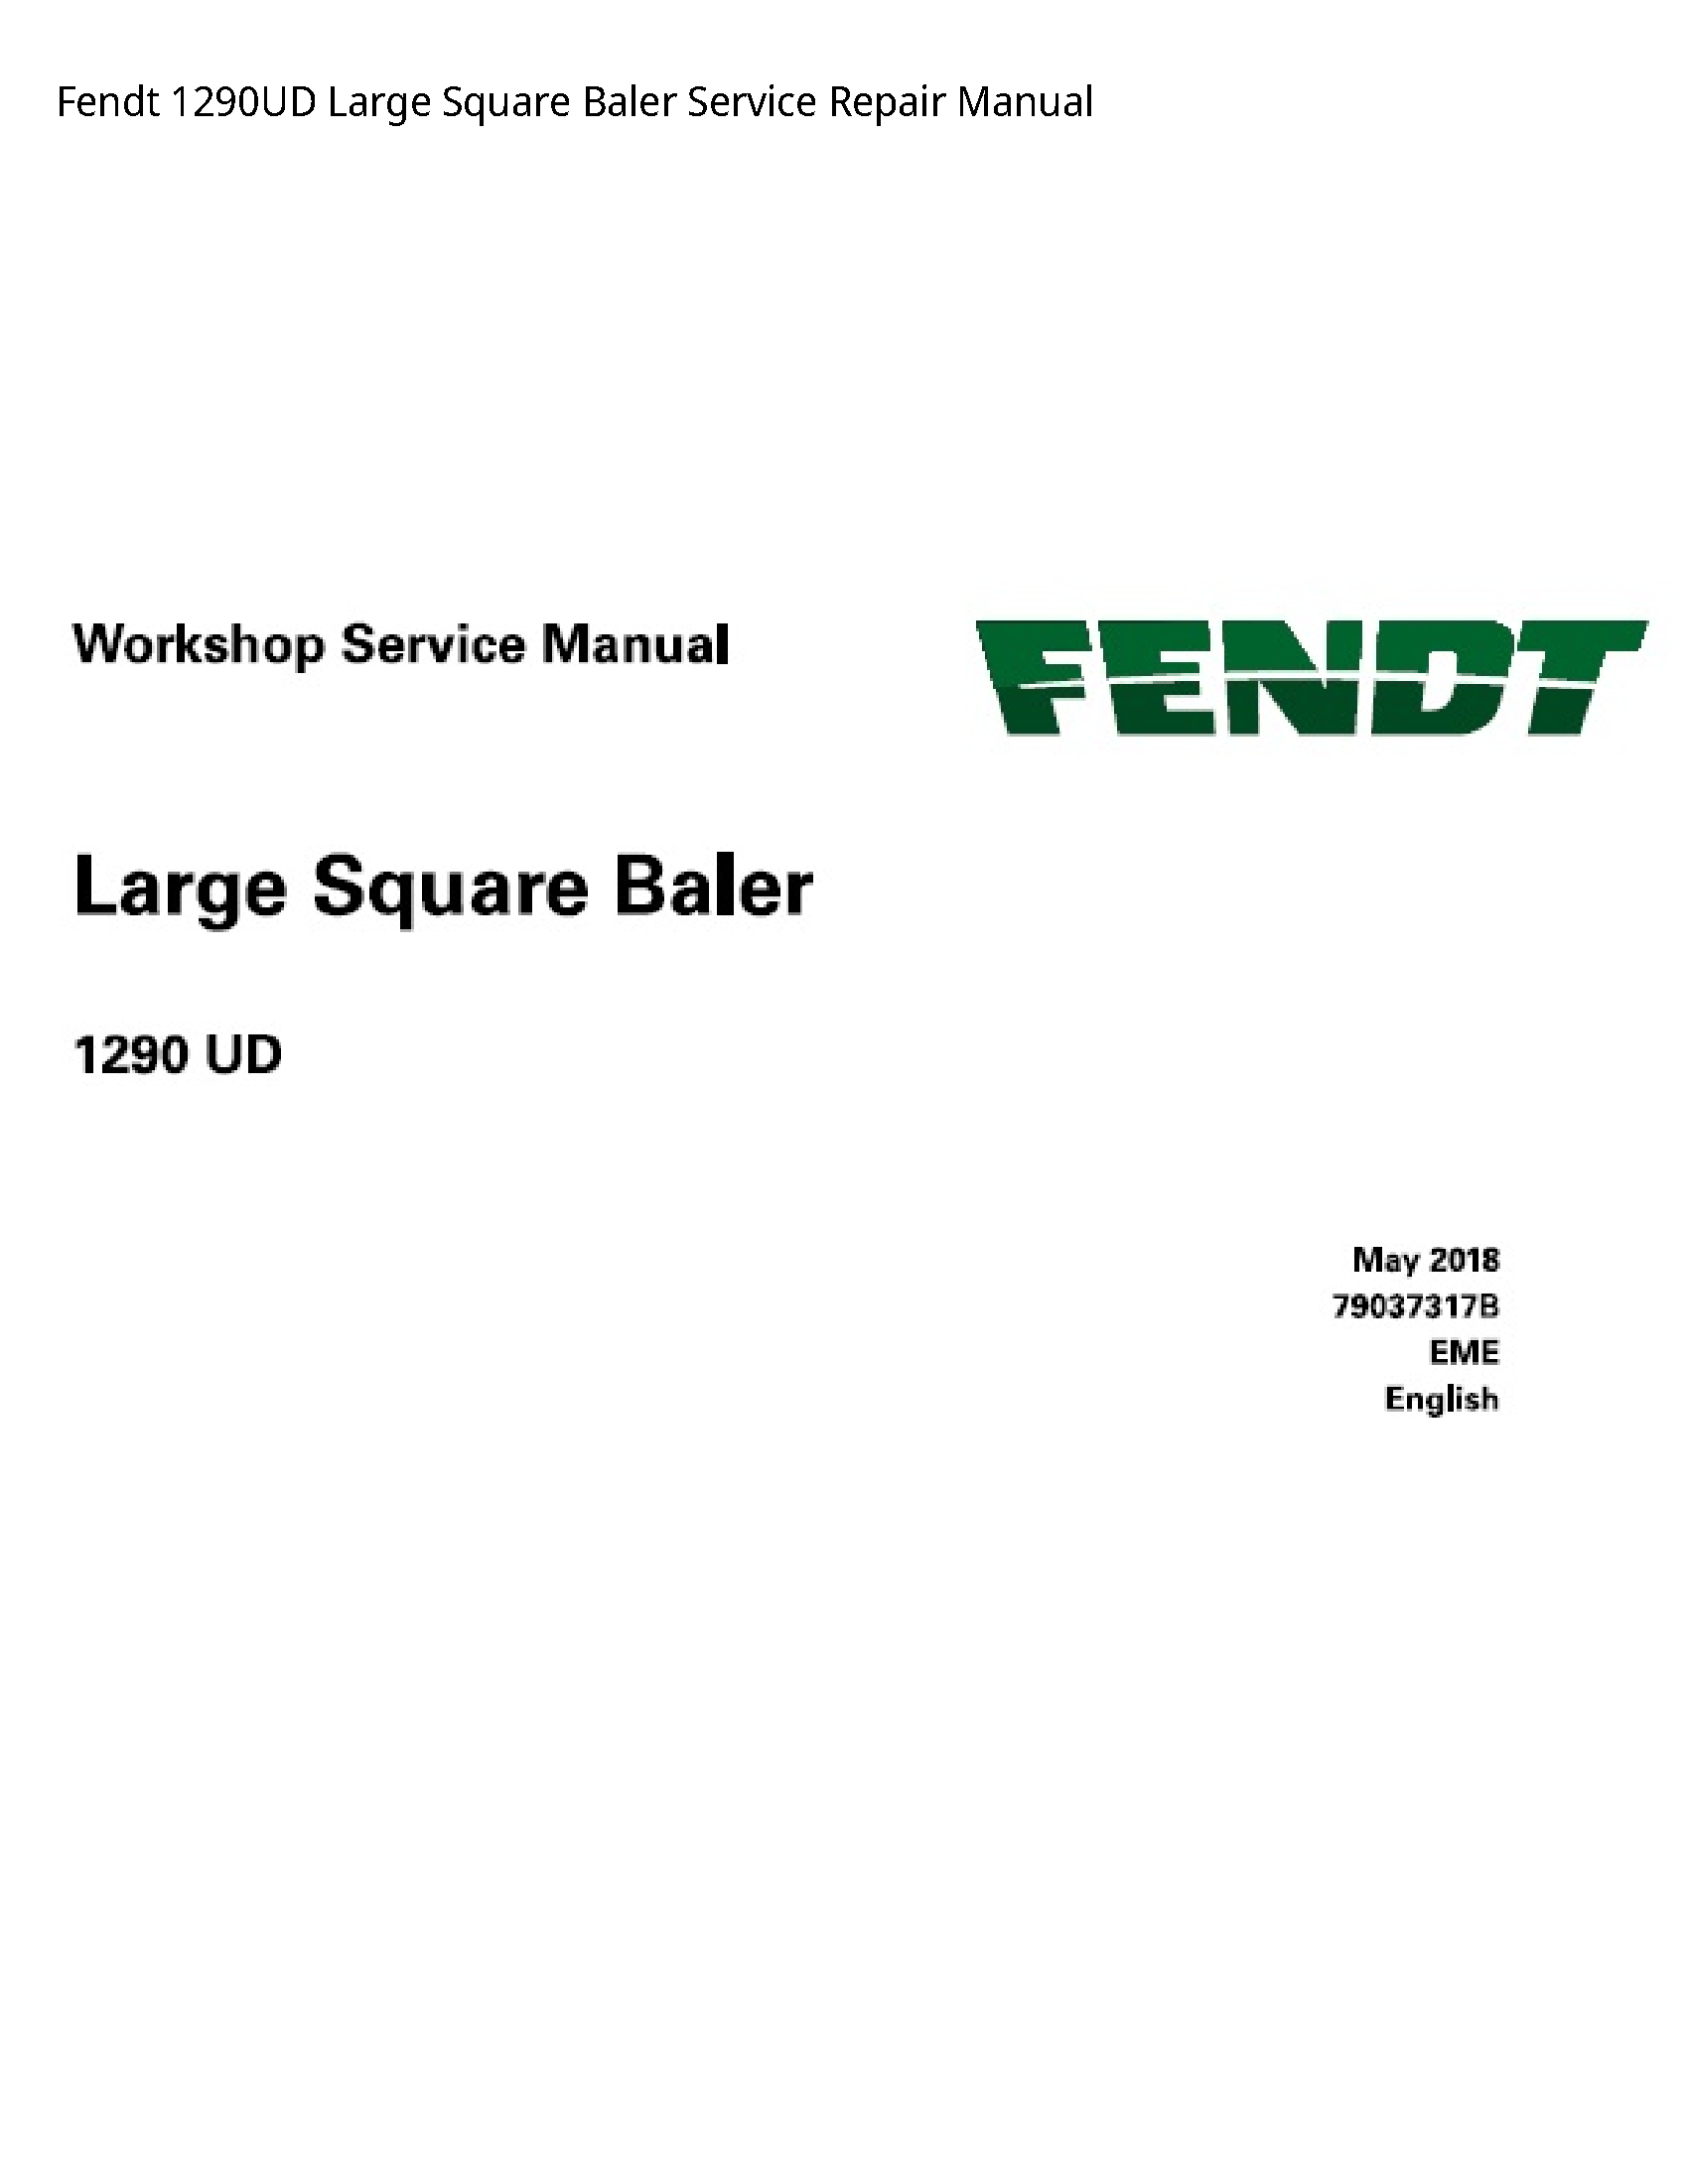 Fendt 1290UD Large Square Baler manual